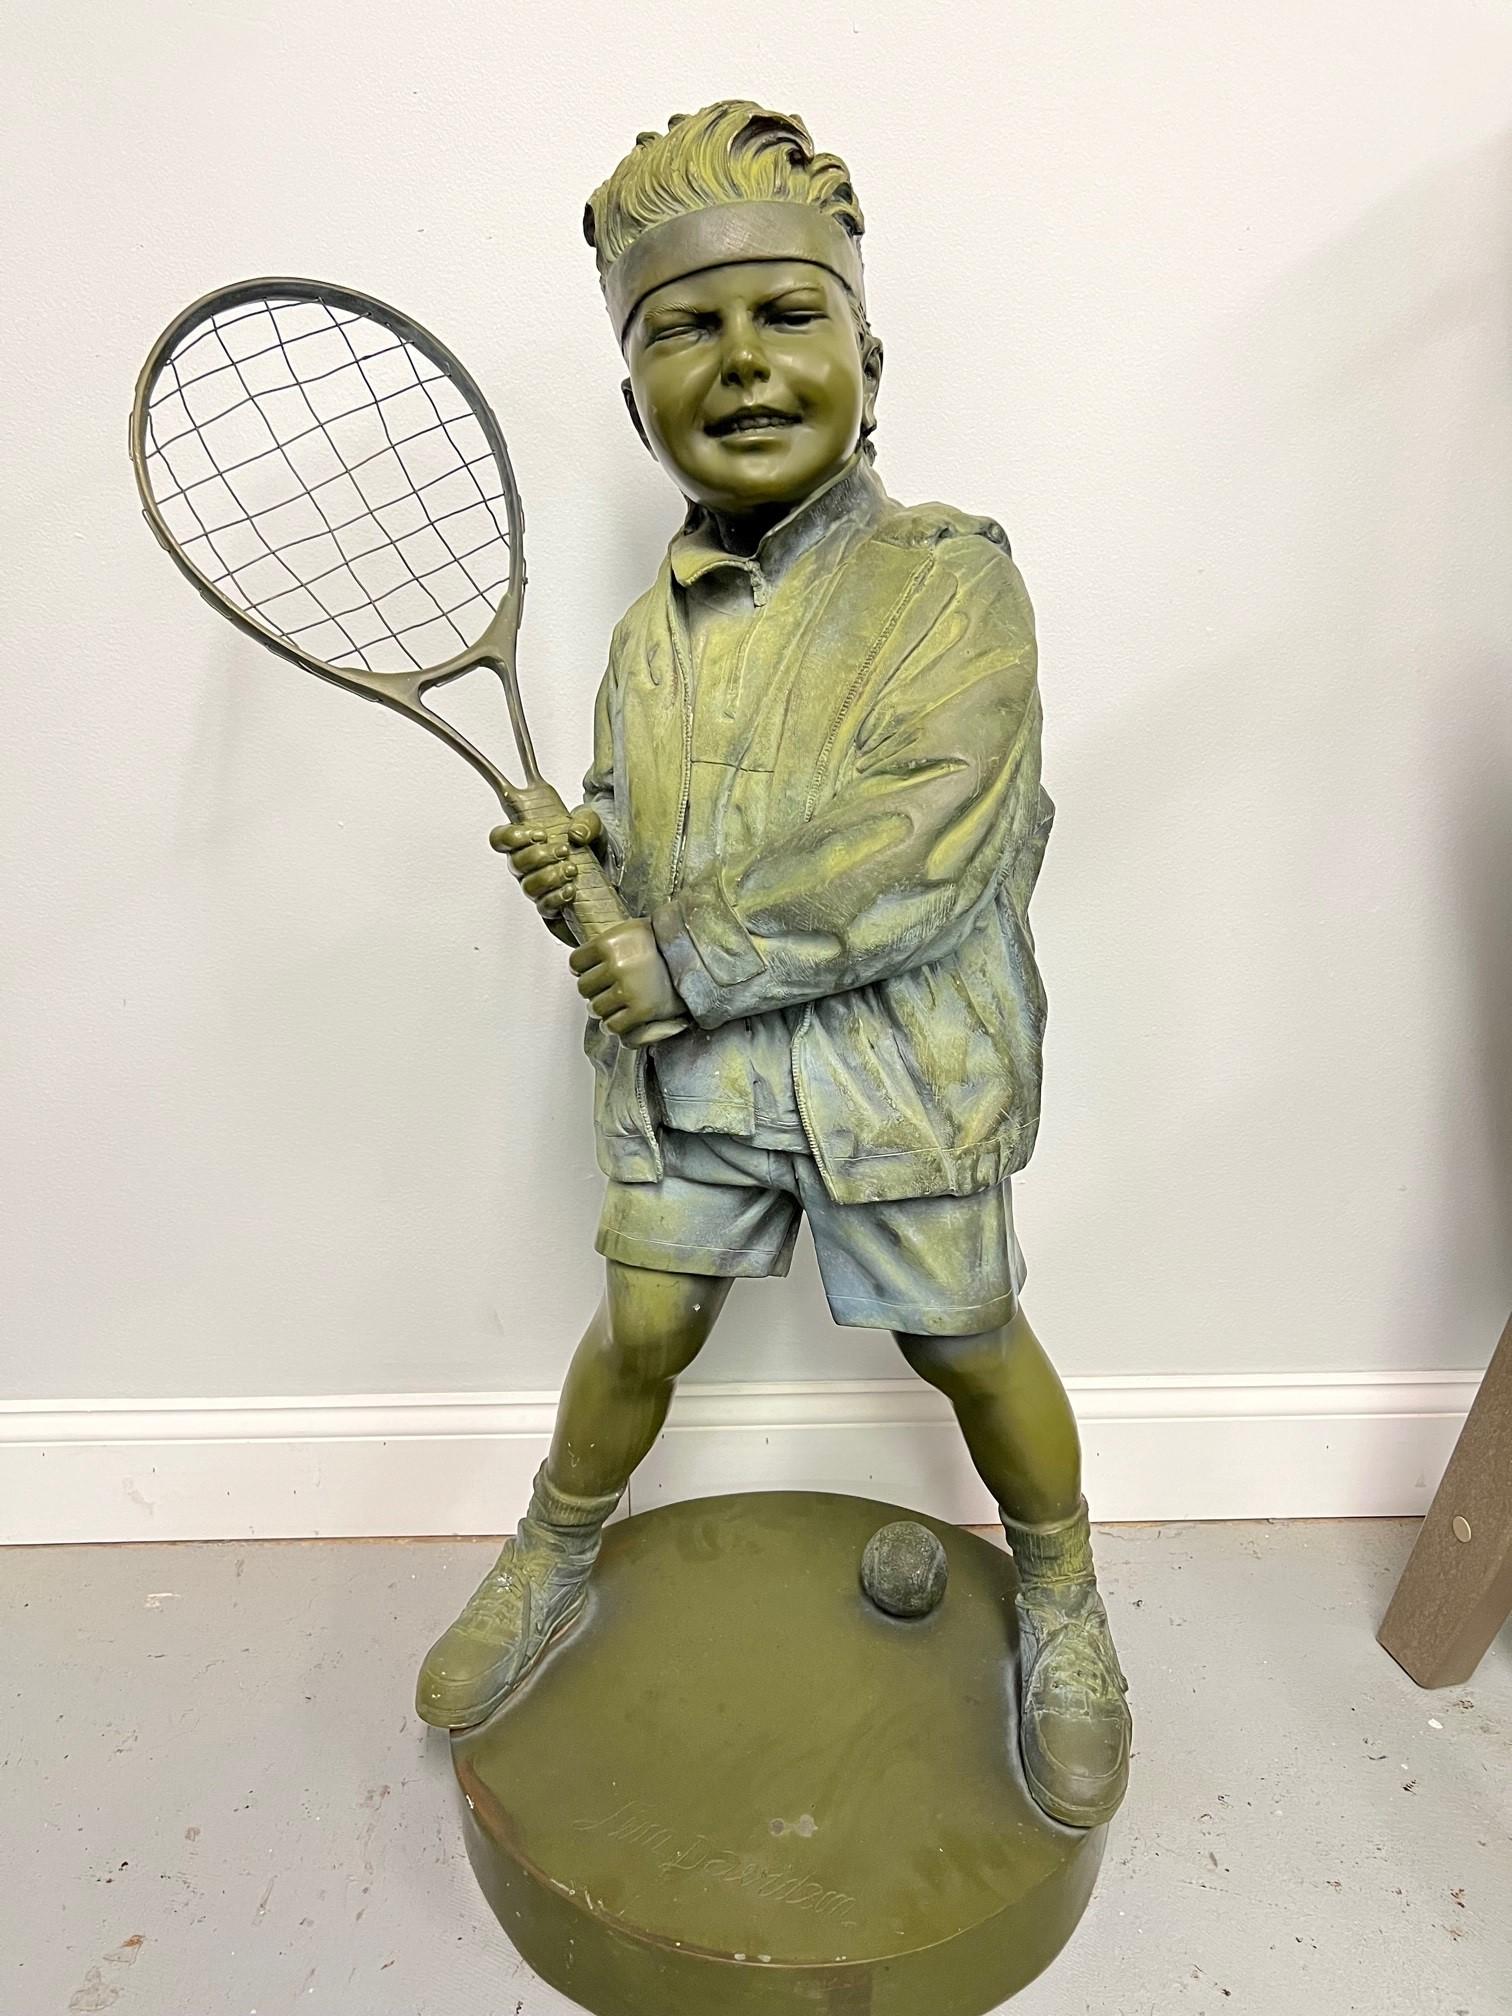 Statue en bronze de la fin du 20e siècle représentant un garçon jouant au tennis ou au pickleball. La statue en bronze est en très bon état, mais elle a été à l'extérieur et est altérée par les intempéries, tout en gardant un aspect magnifique. Une